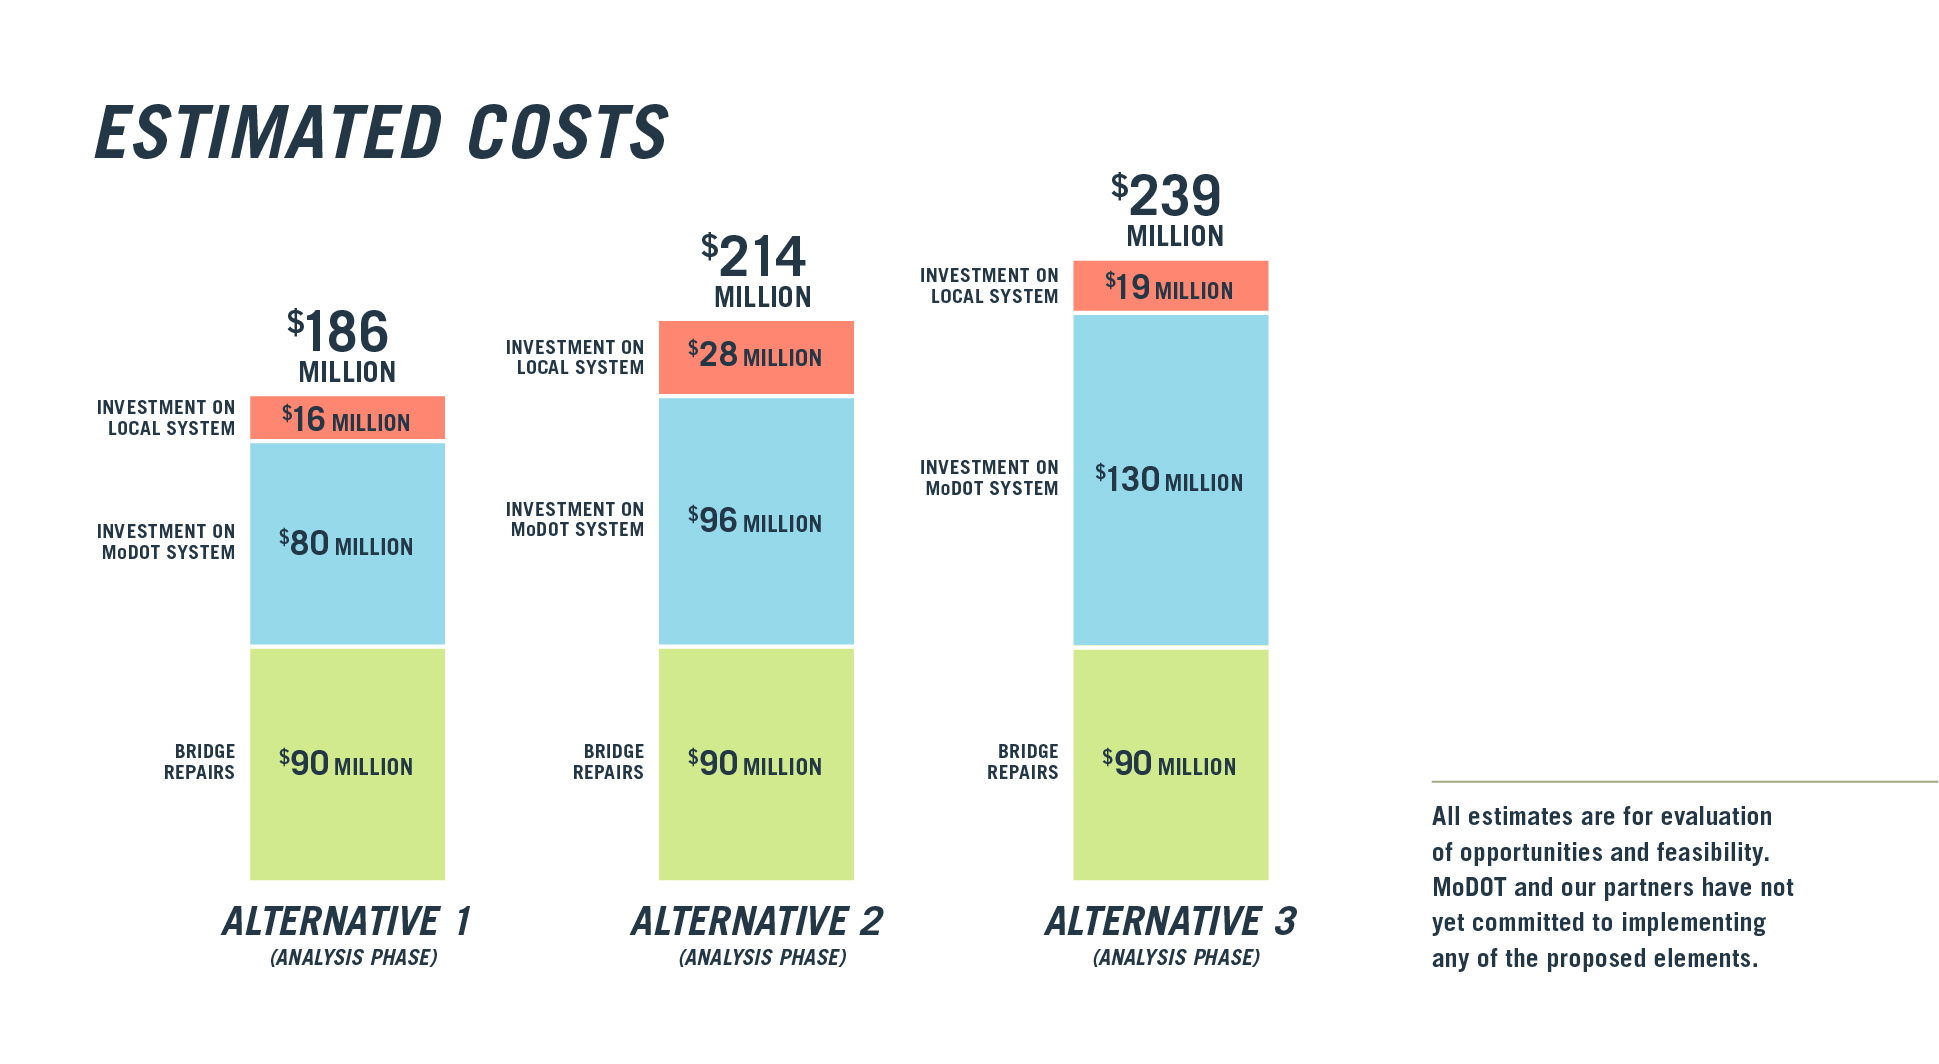 Cost breakdown of each Alternative. Alternative 1: $186M; Alternative 2: $214M; Alternative 3: $239M.